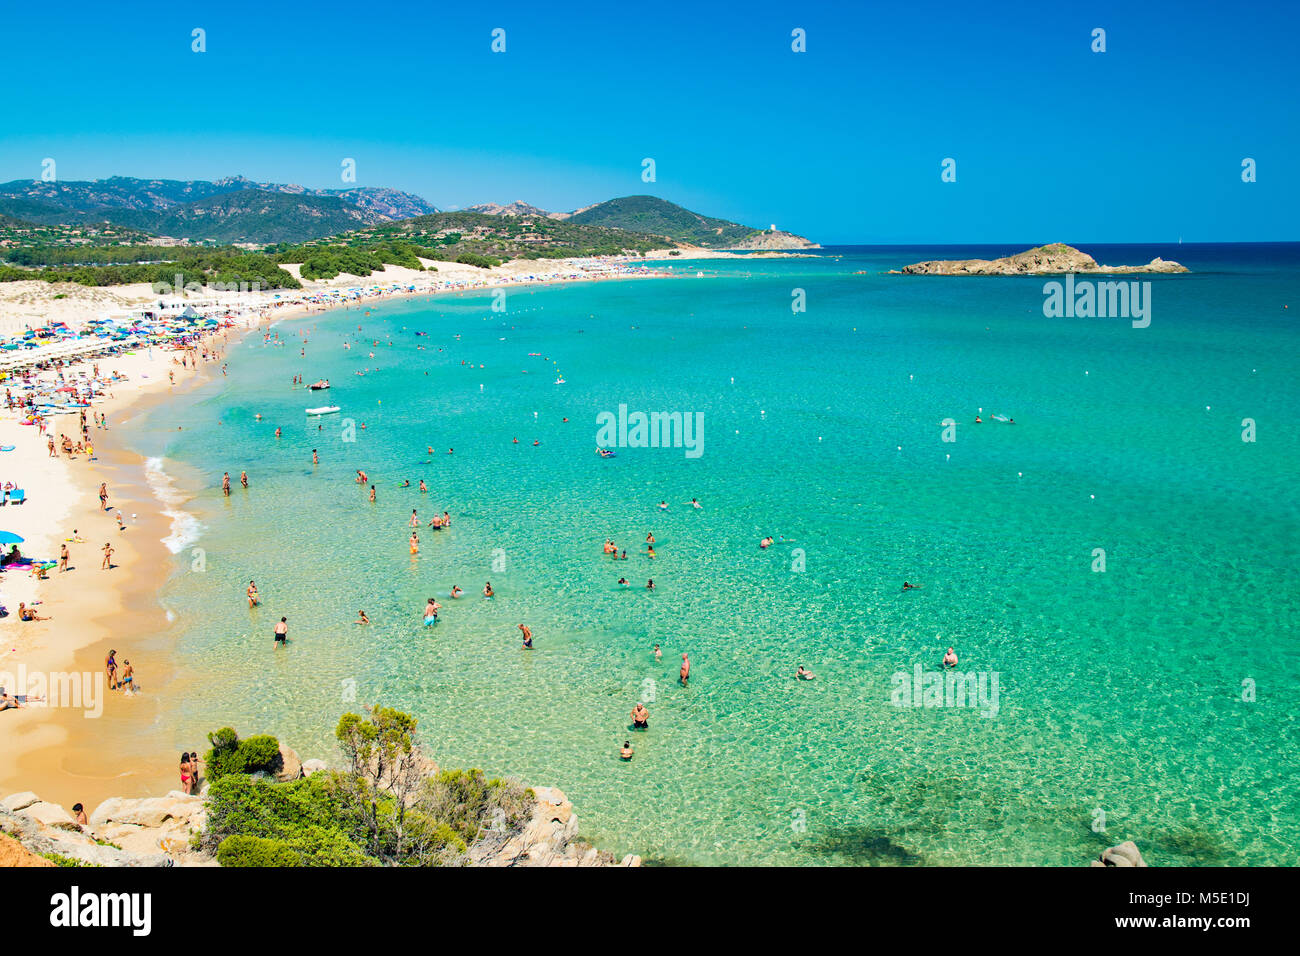 Panorama von den wunderschönen Stränden von Chia, Sardinien, Italien. Stockfoto